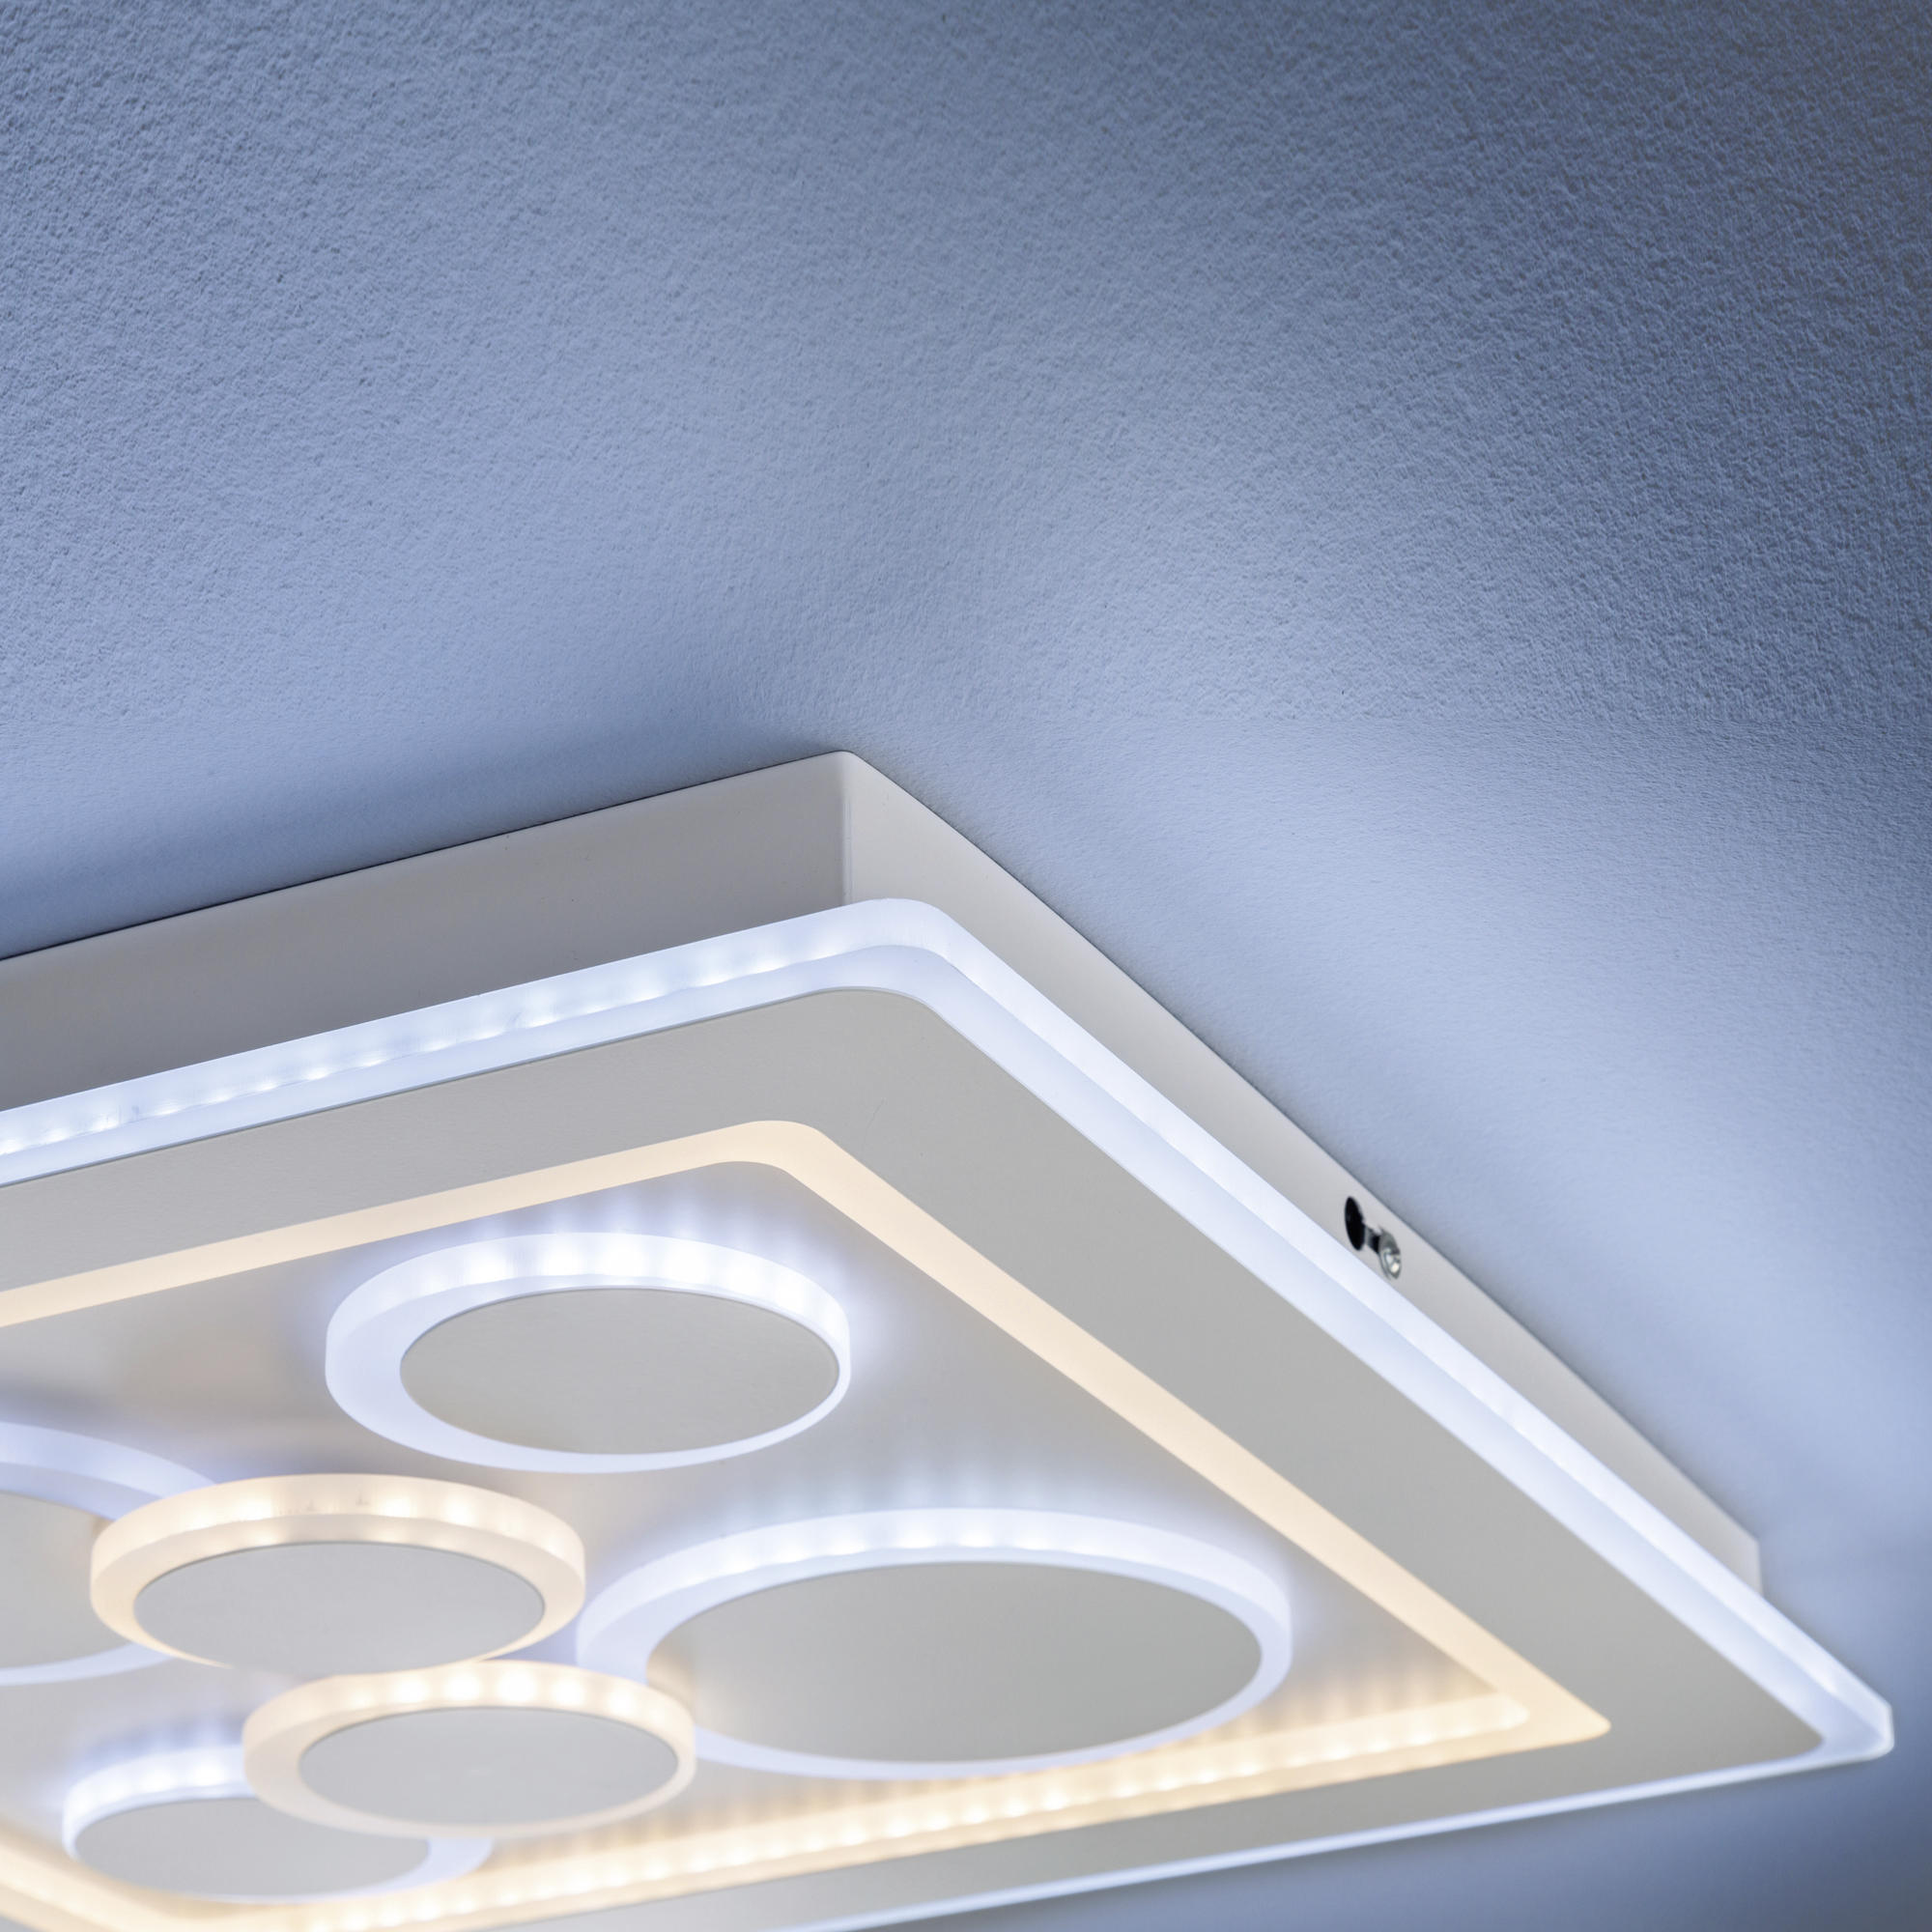 LED-DECKENLEUCHTE Ratio 50,1/50,1/5,3 cm   - Weiß, Design, Kunststoff (50,1/50,1/5,3cm) - Fischer & Honsel